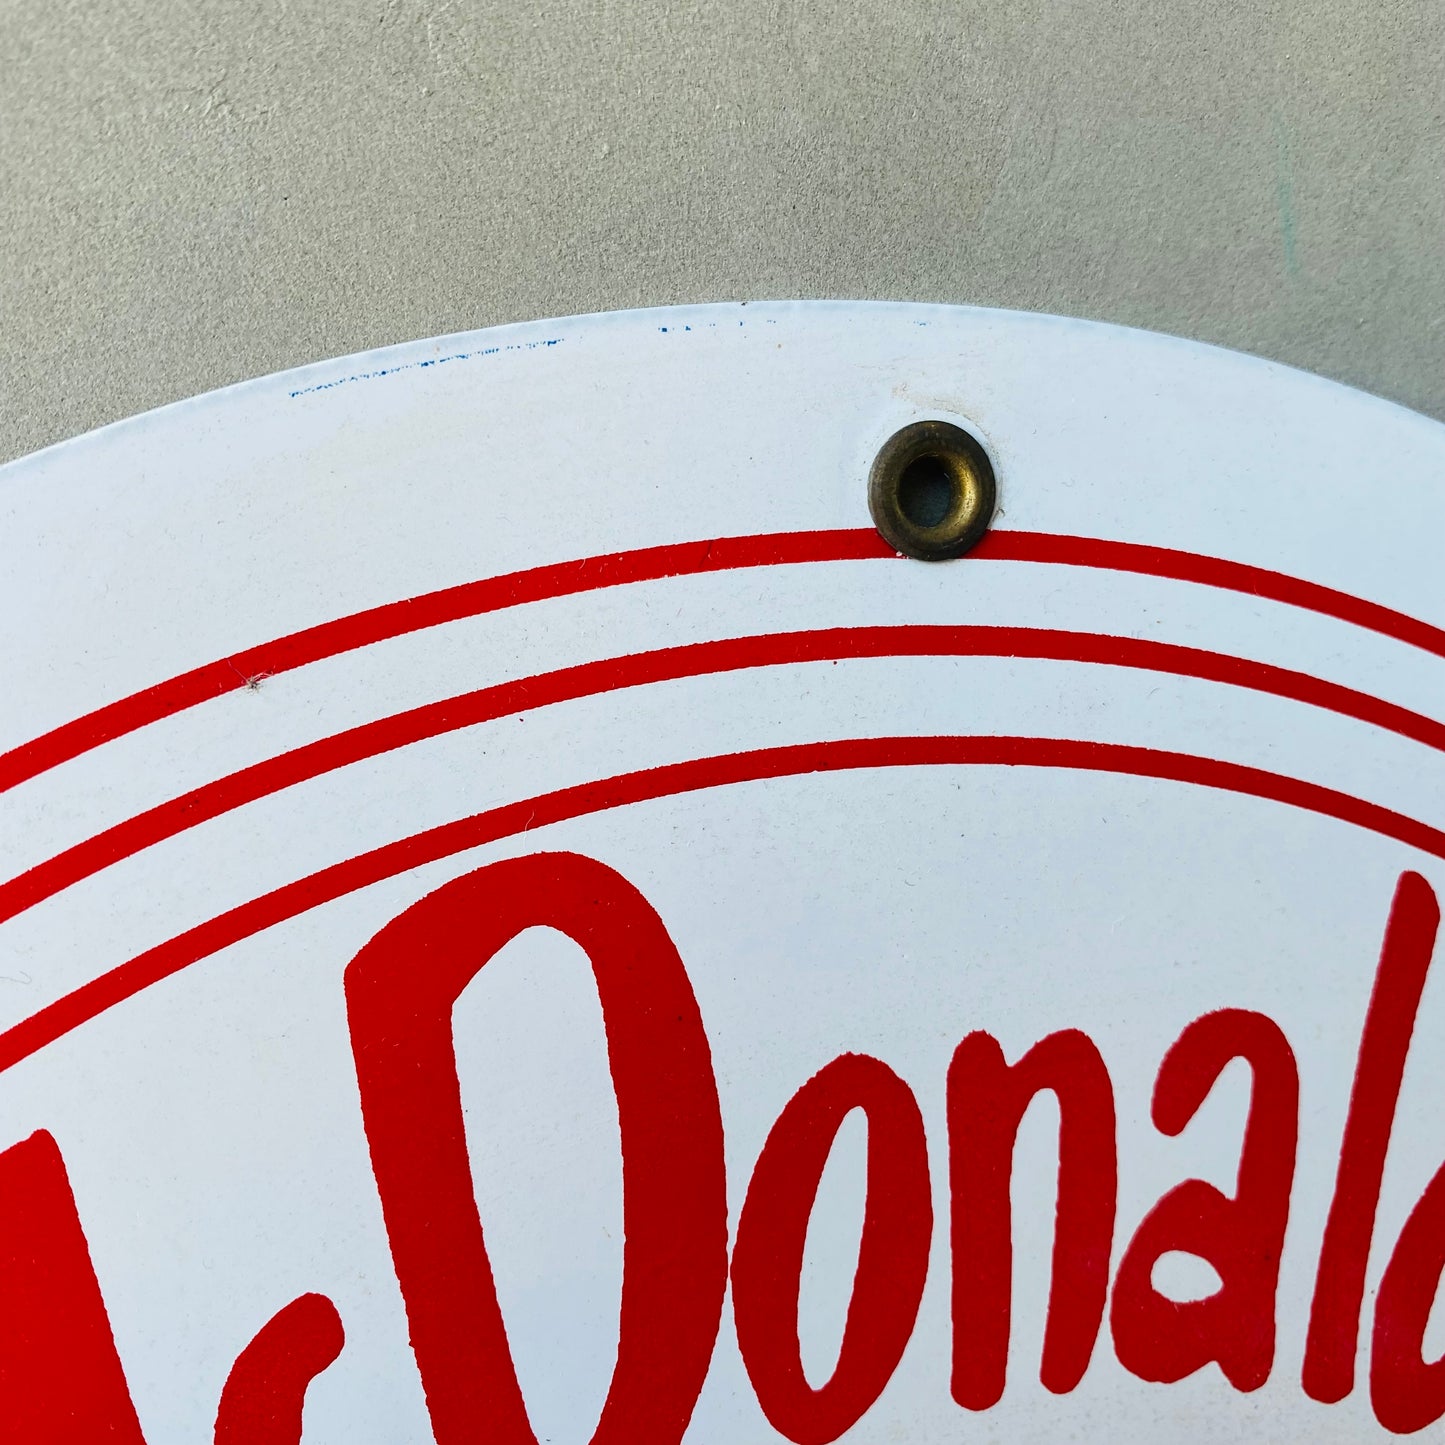 【USA】McDonald hamburger sign